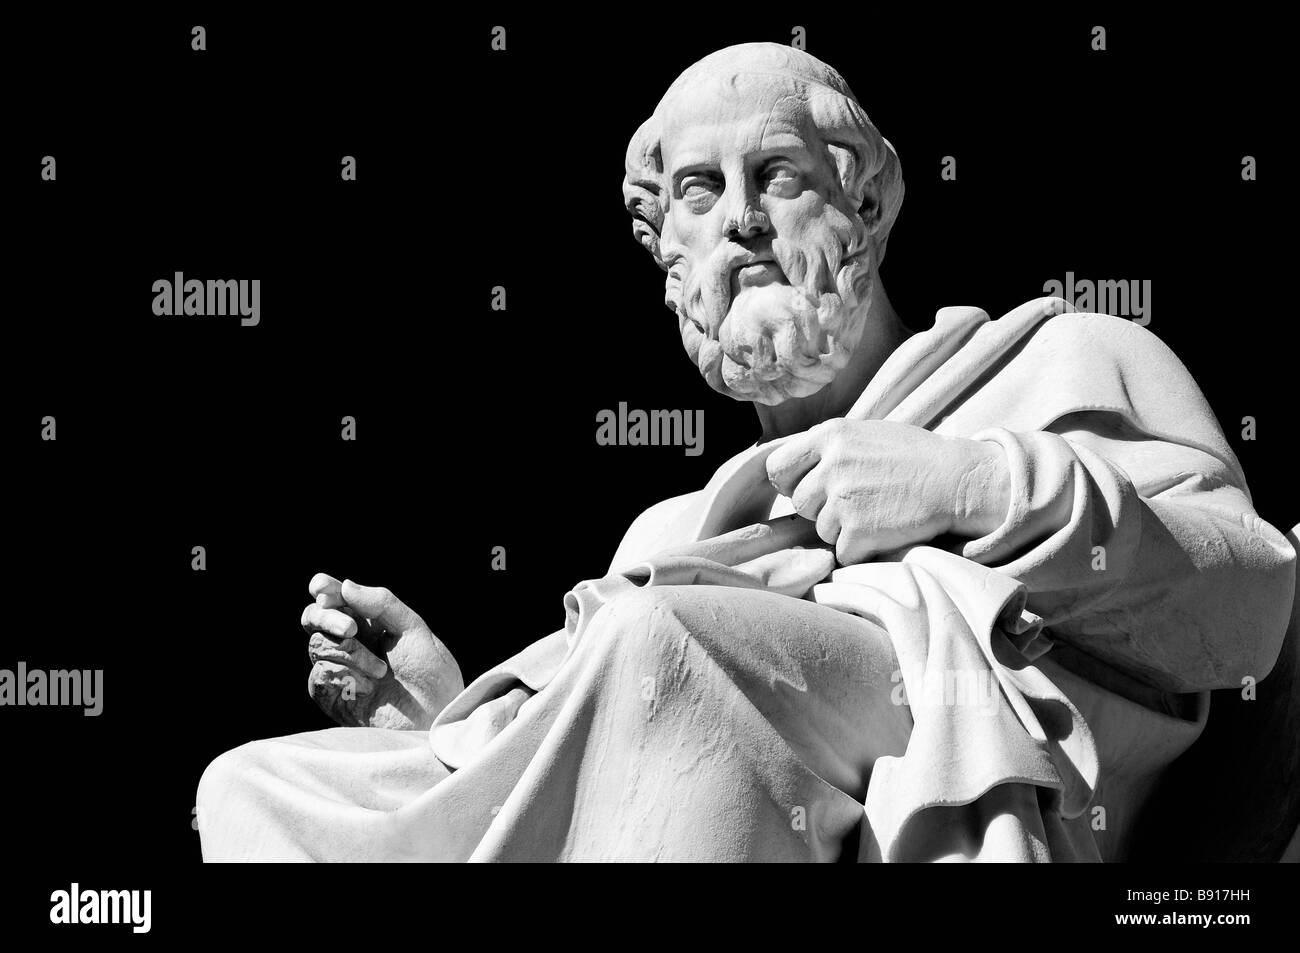 Statua in marmo dell'antico filosofo greco Platone nella parte anteriore del mondo accademico - Atene, Grecia Foto Stock